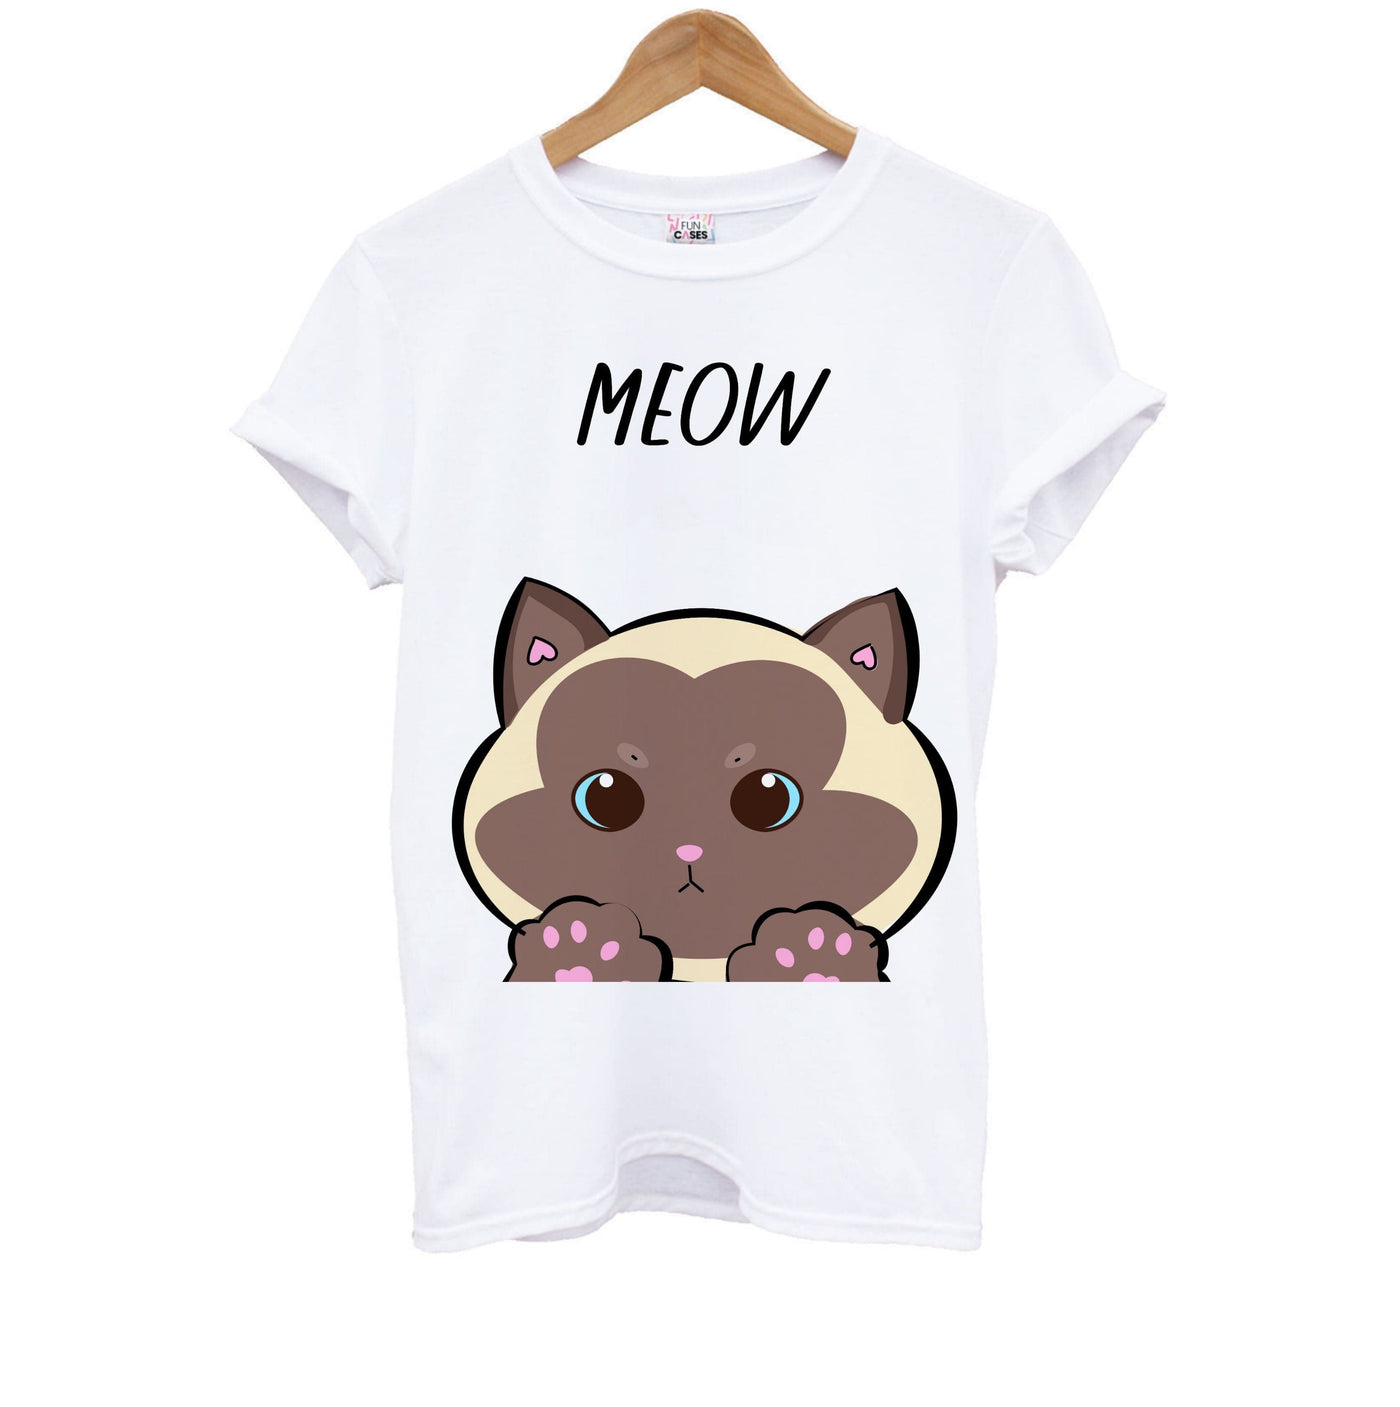 Meow Green - Cats Kids T-Shirt